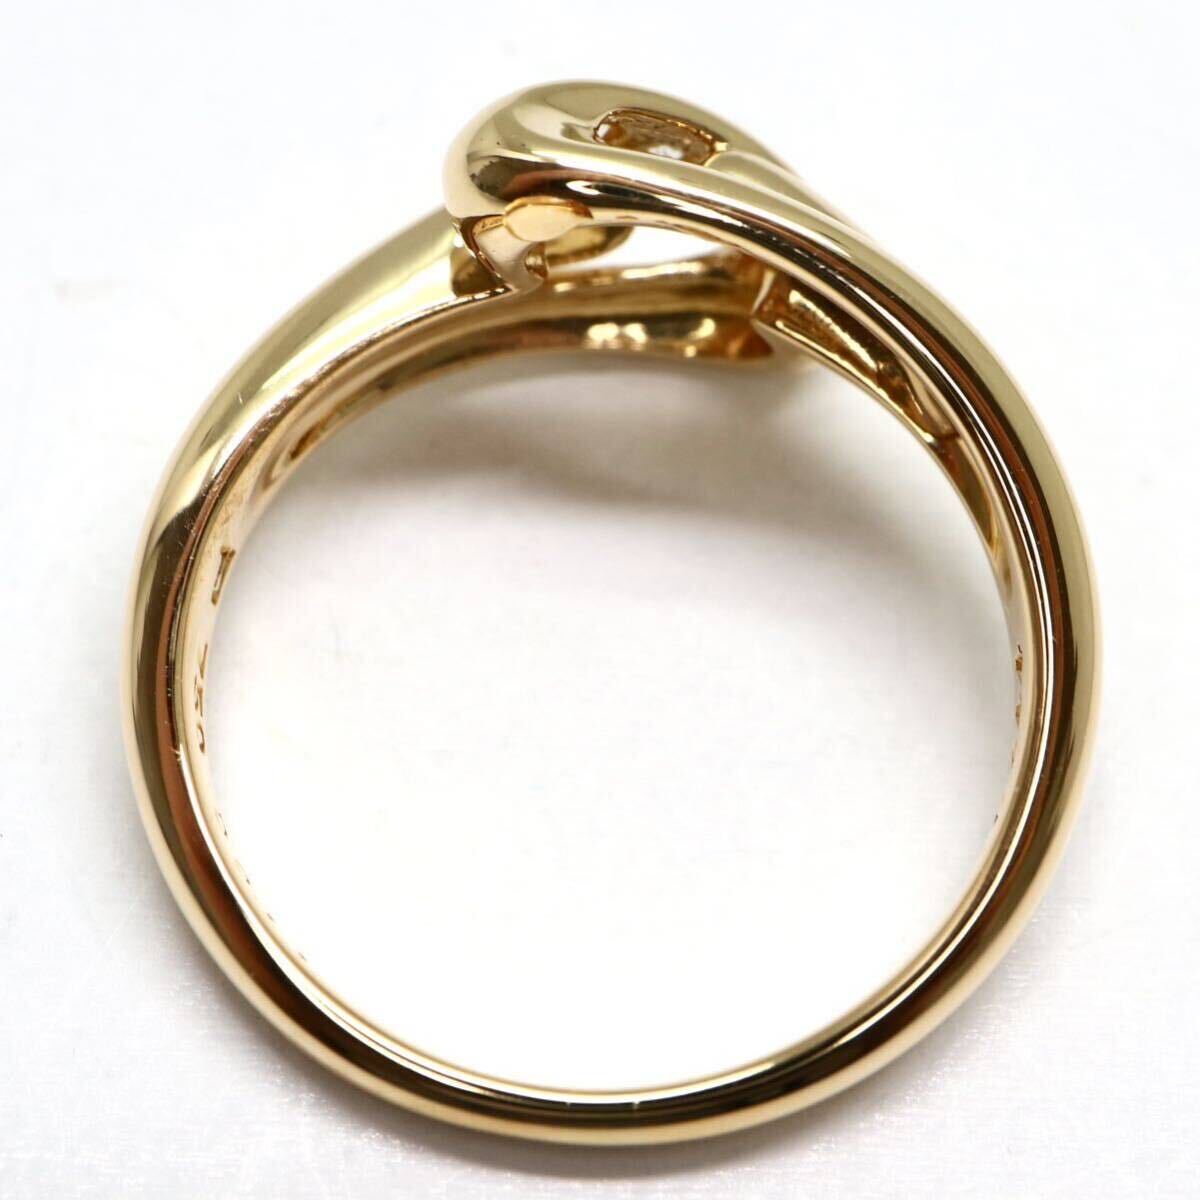 POLA jewelry(ポーラ)《K18 天然ダイヤモンドリング》A 約4.4g 11号 0.11ct diamond ジュエリー ring 指輪 EC8/Eの画像5